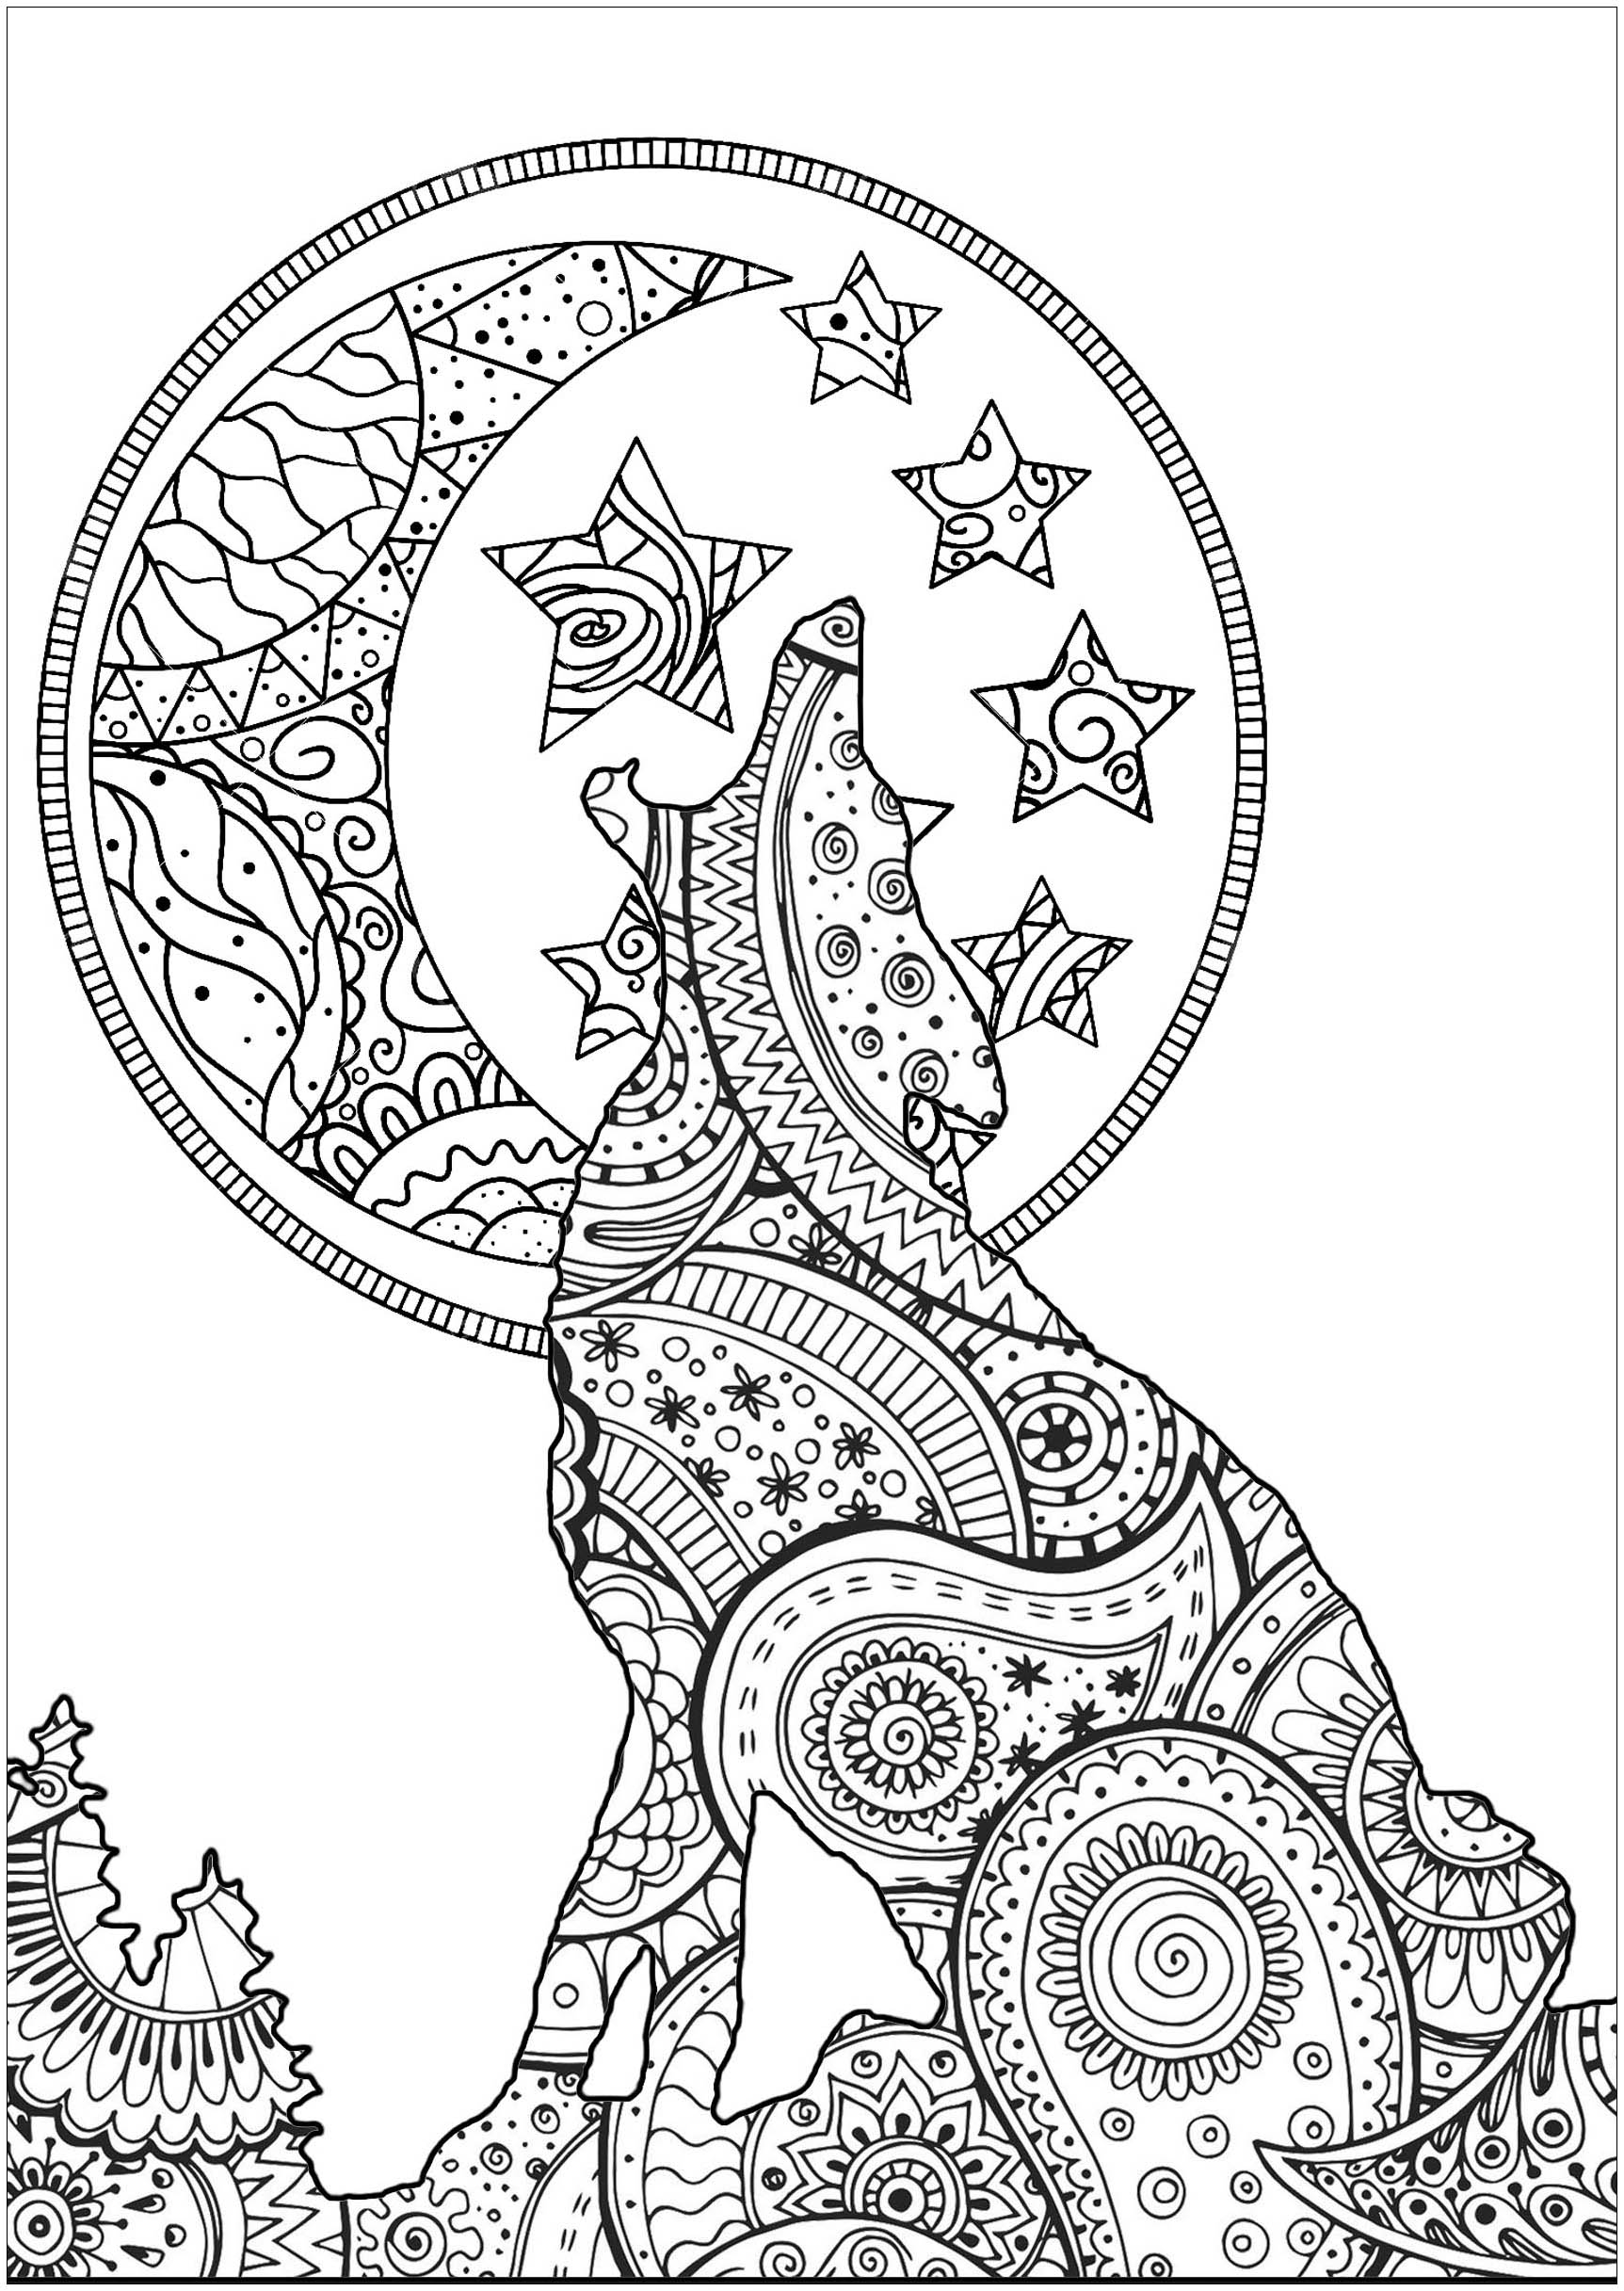 Bela silhueta de lobo lunar, com padrões que misturam as formas Zentangle e Paisley